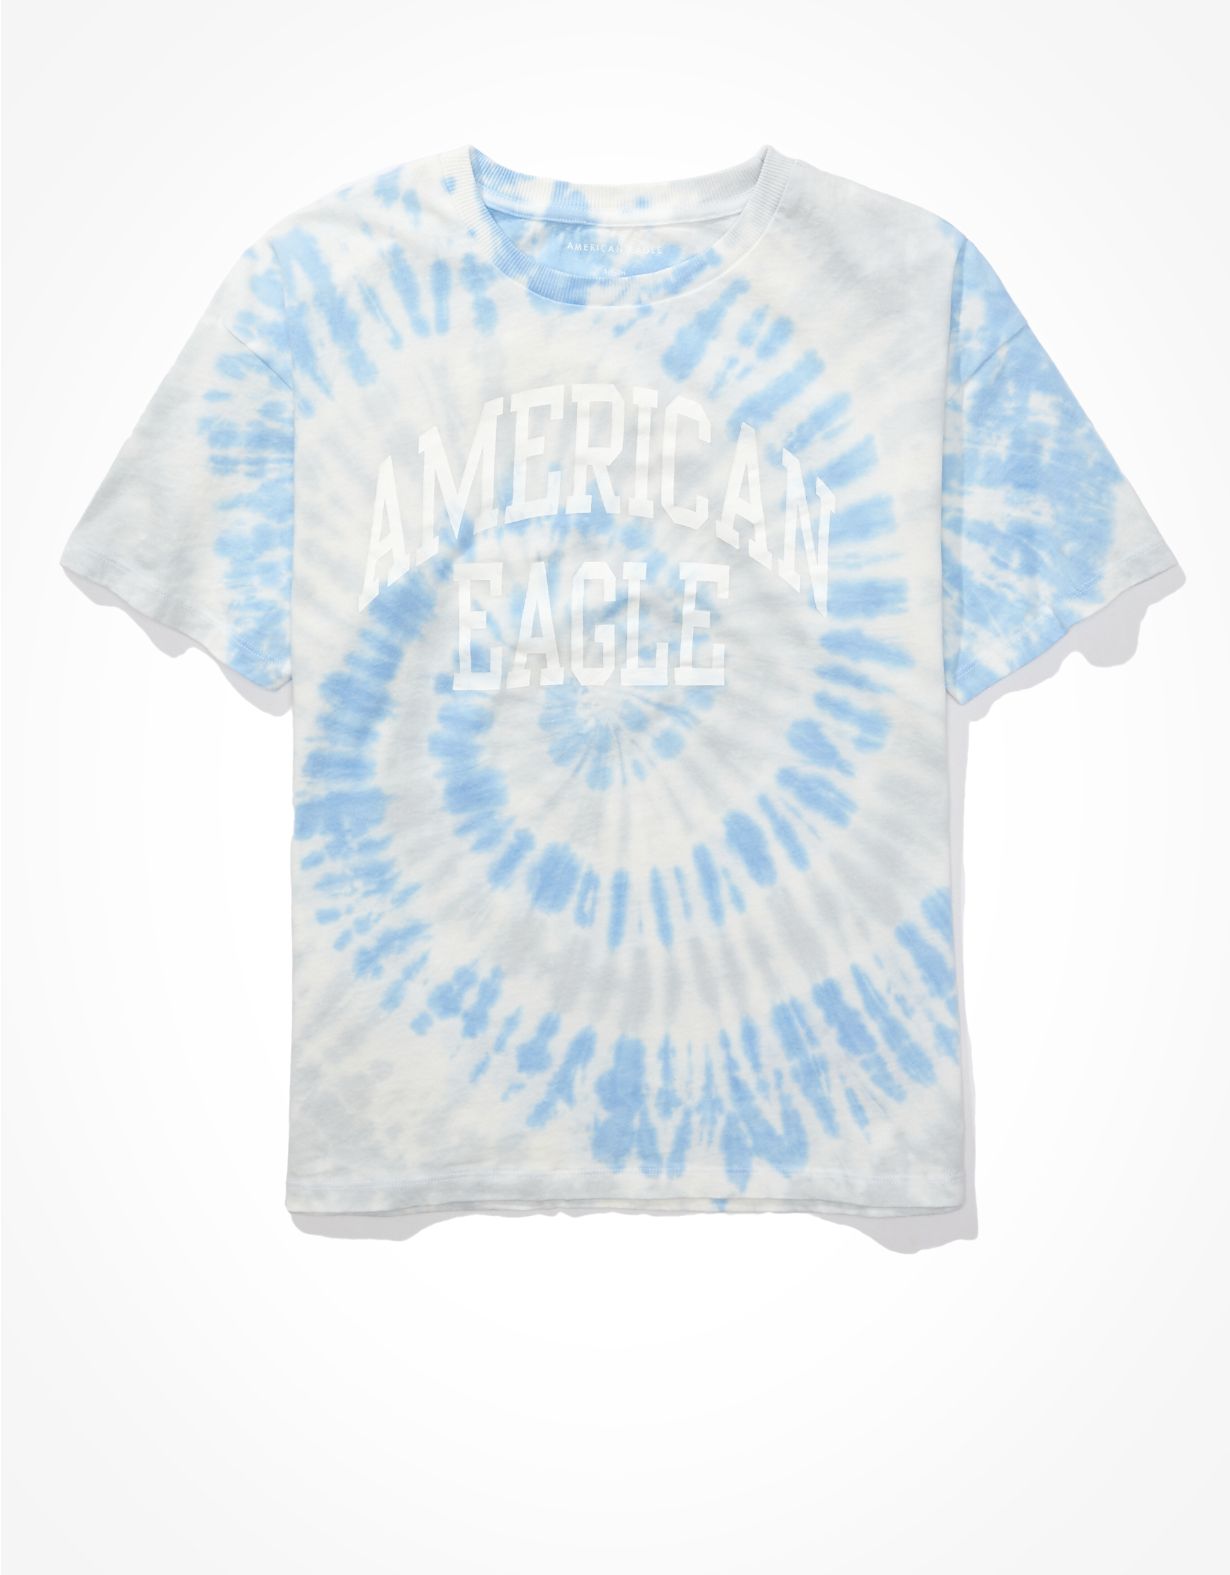 AE Tie-Dye Graphic T-Shirt